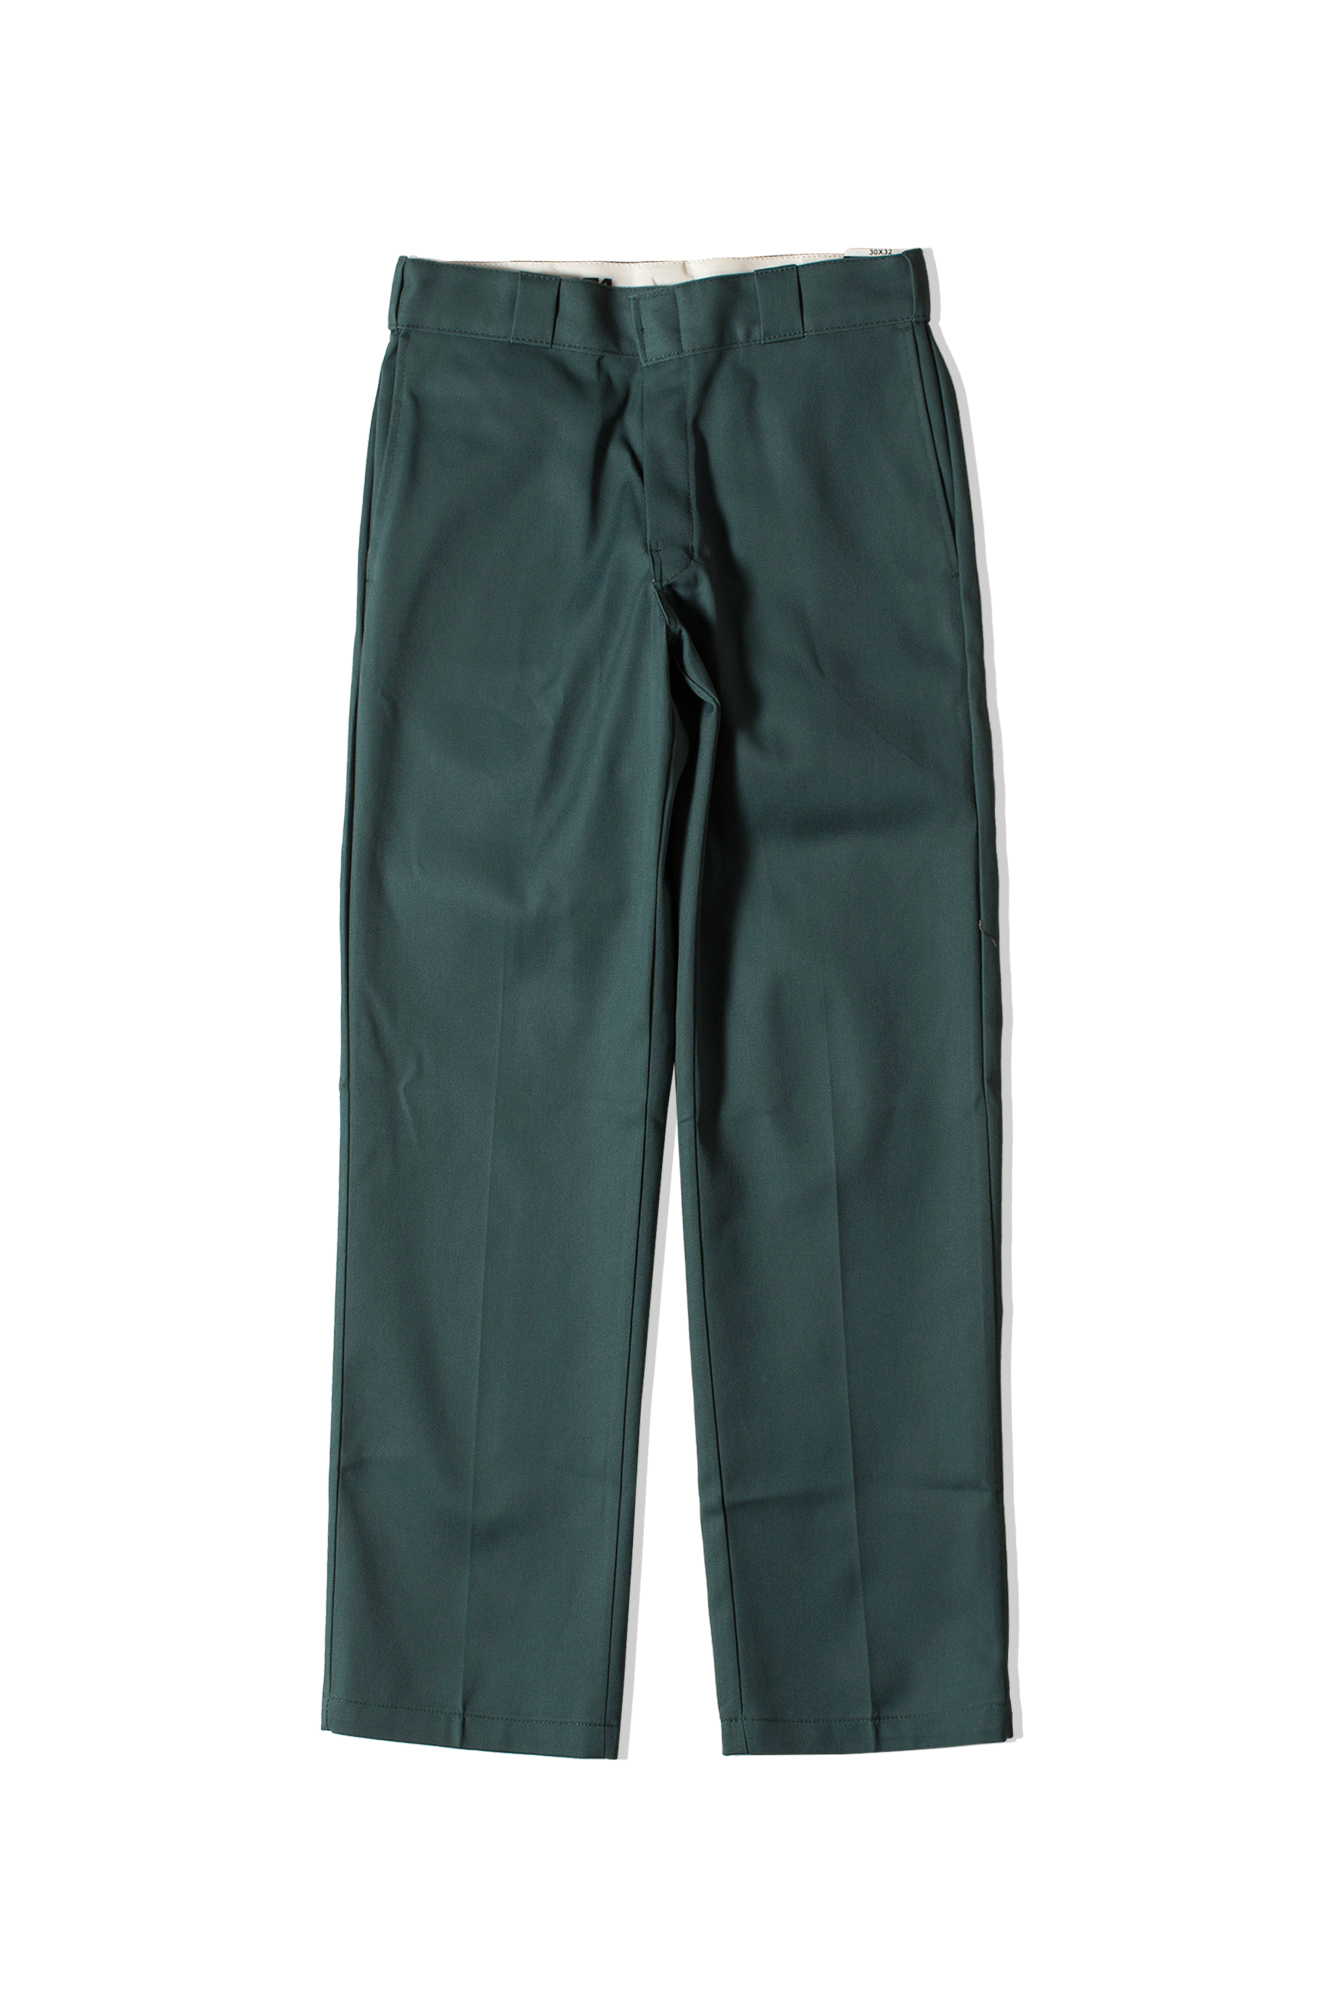 Original 874 Work Trousers